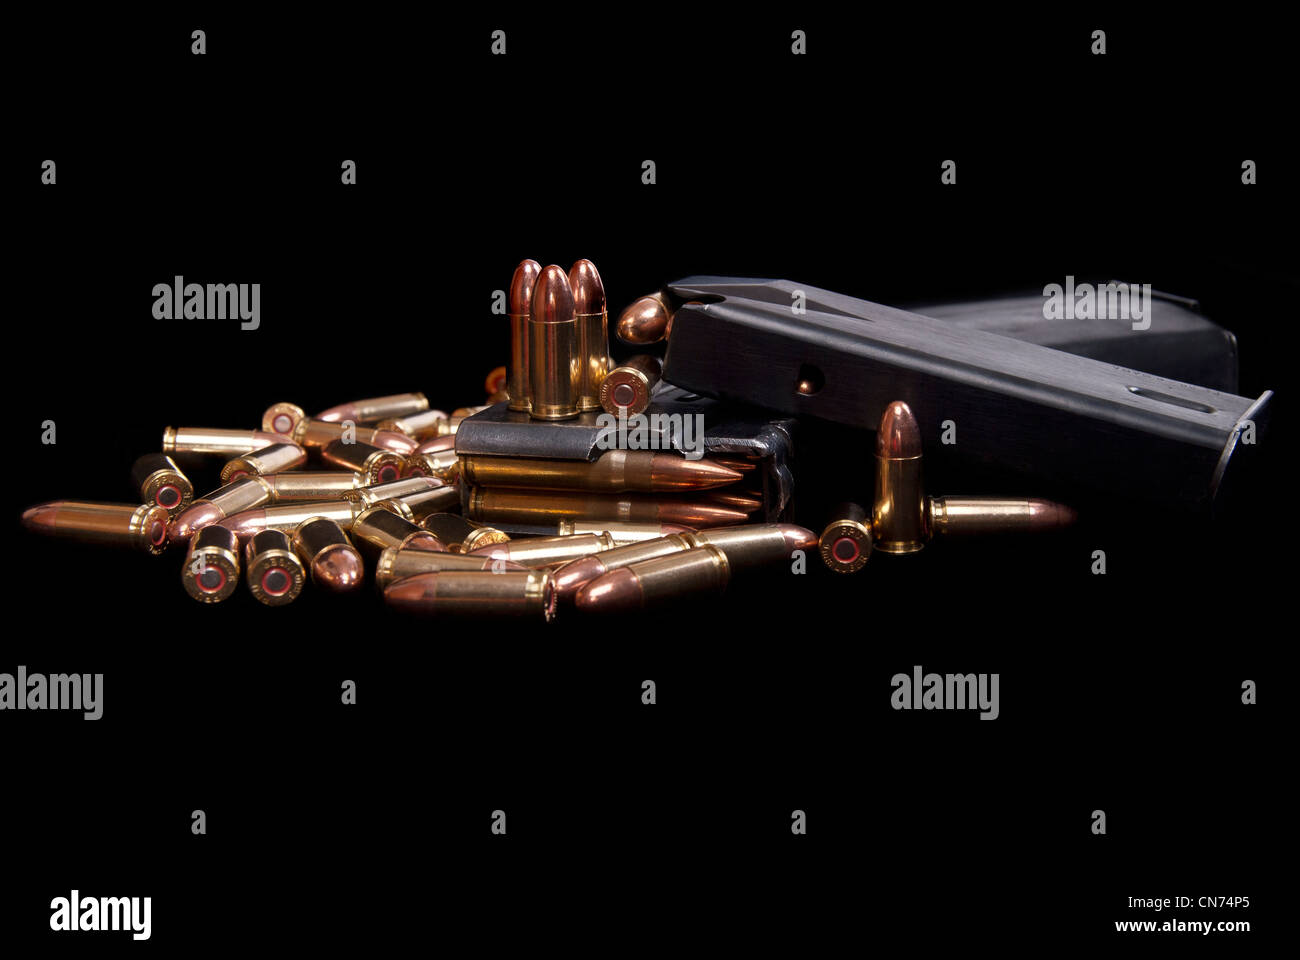 Des armes à feu et munitions chargées magazine isolated on black Banque D'Images